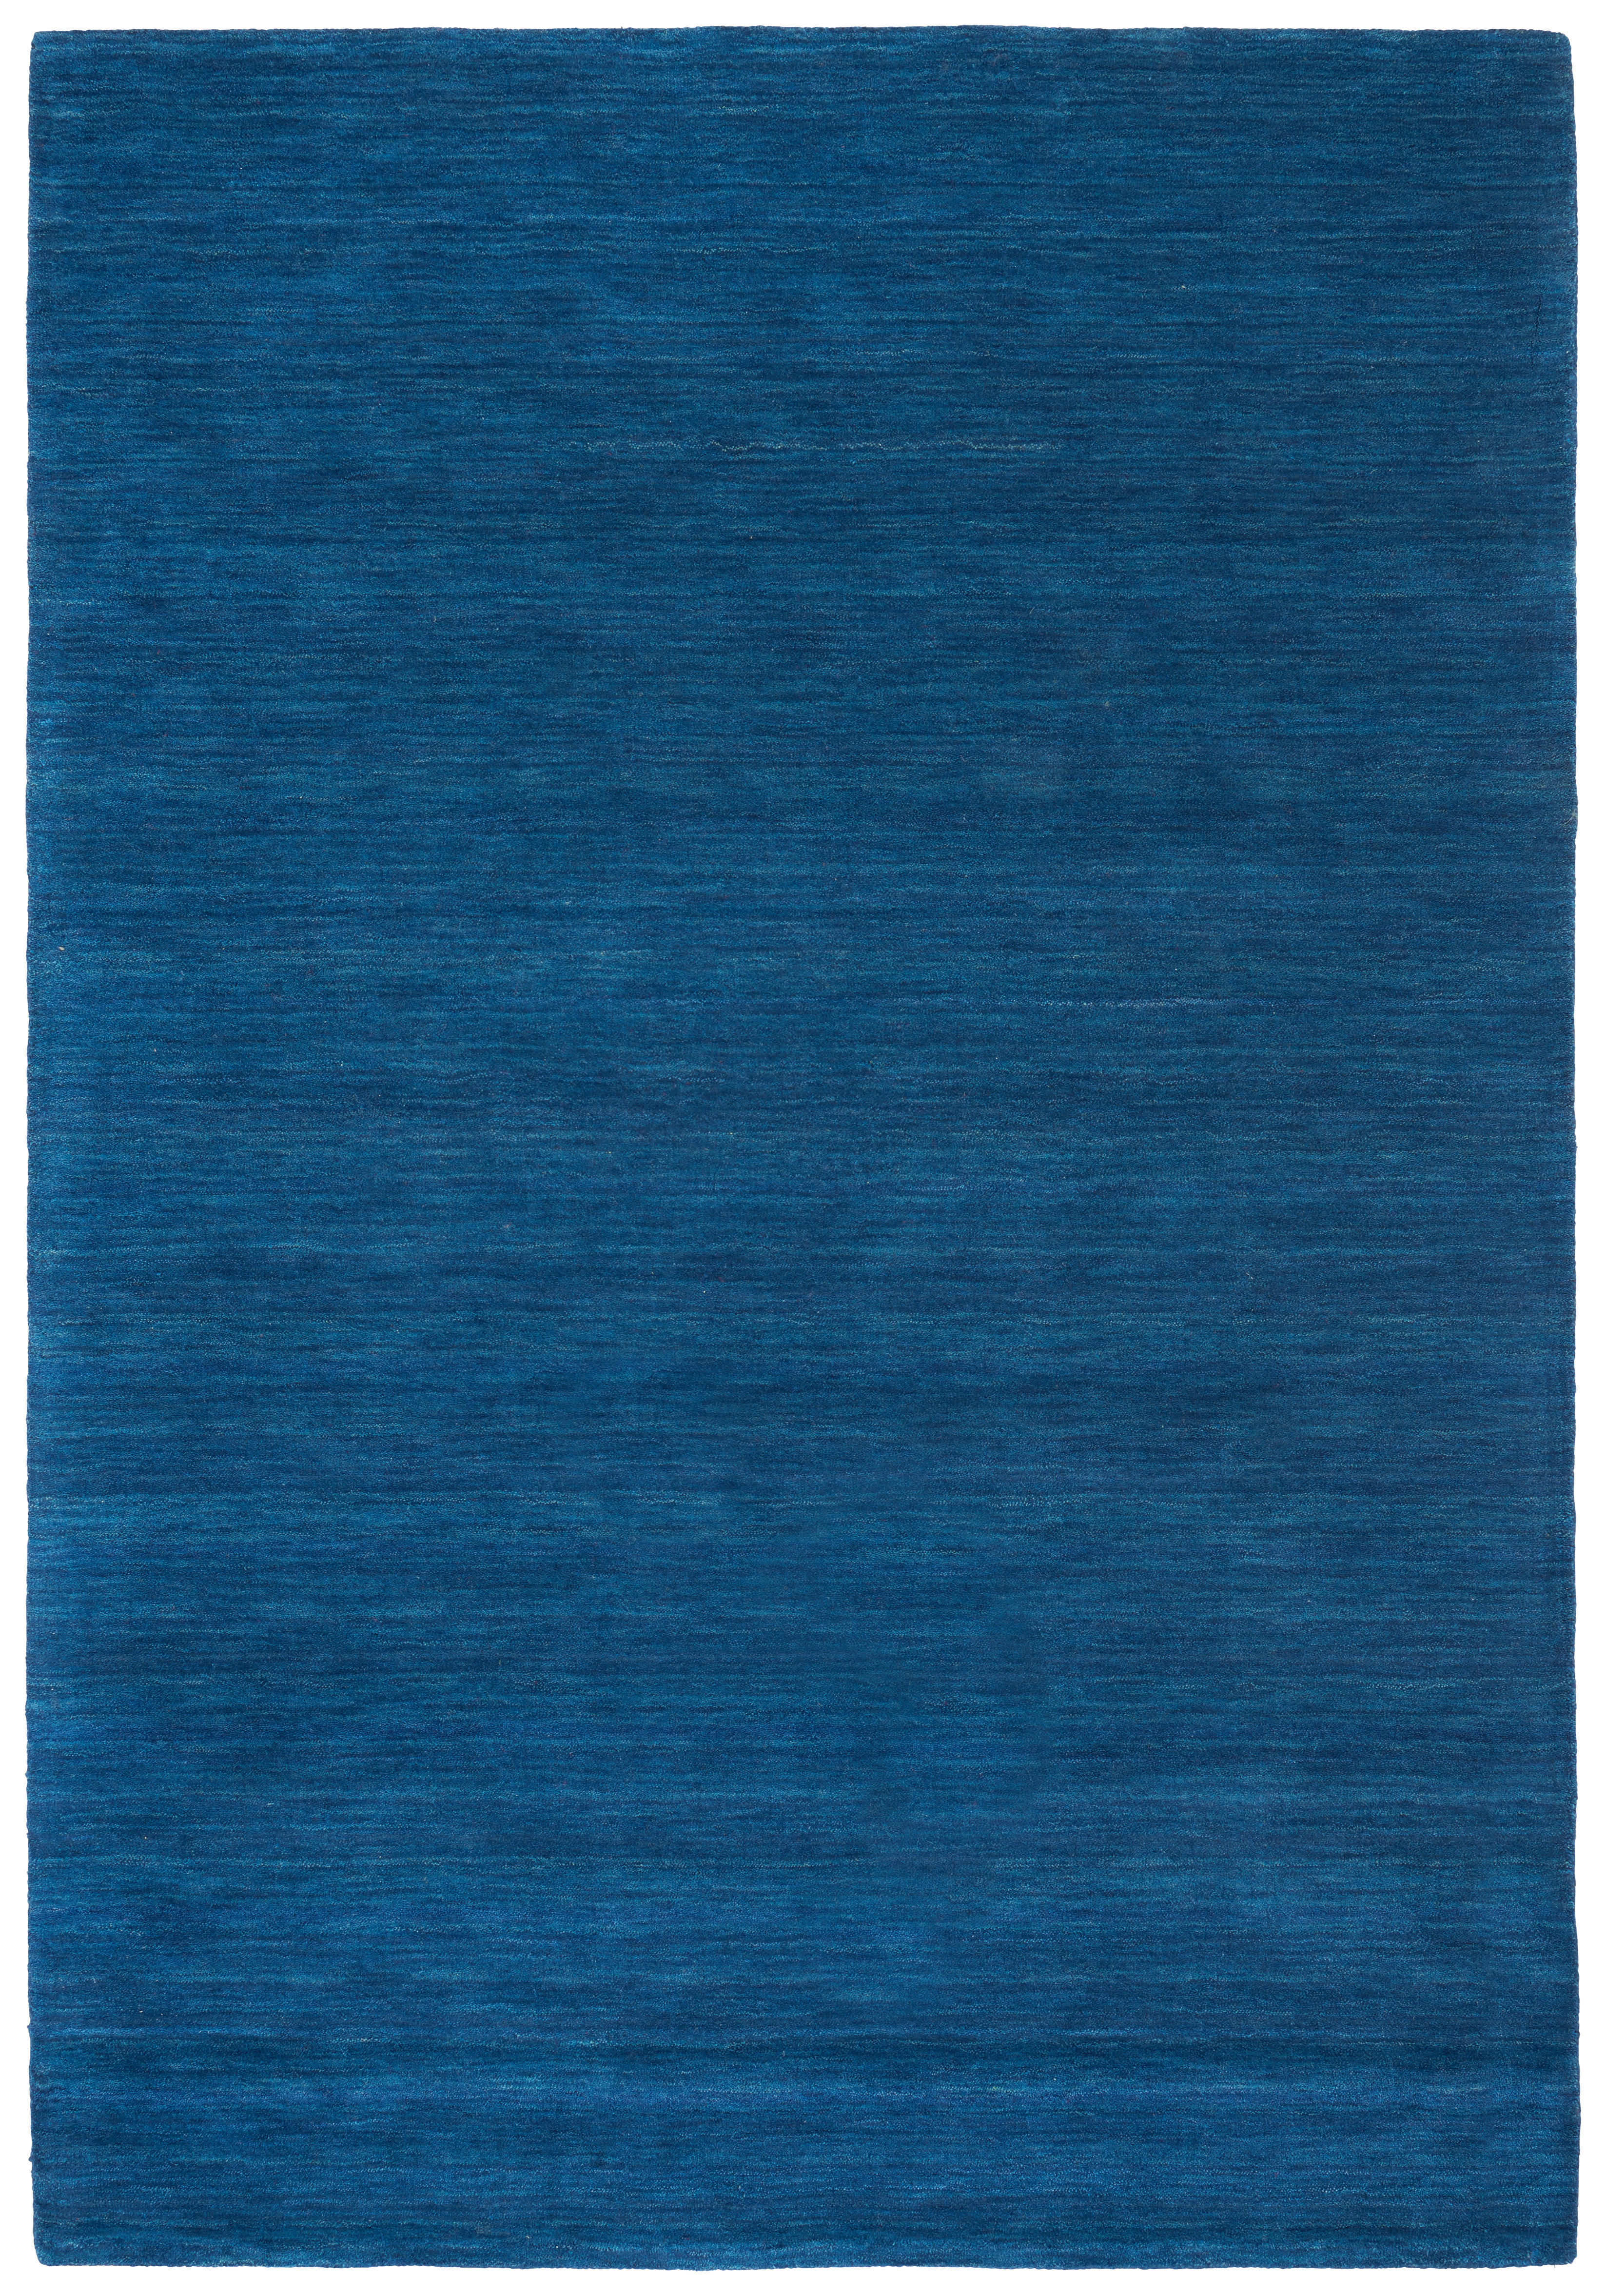 Cazaris ORIENTÁLNÍ KOBEREC, 70/140 cm, modrá - modrá